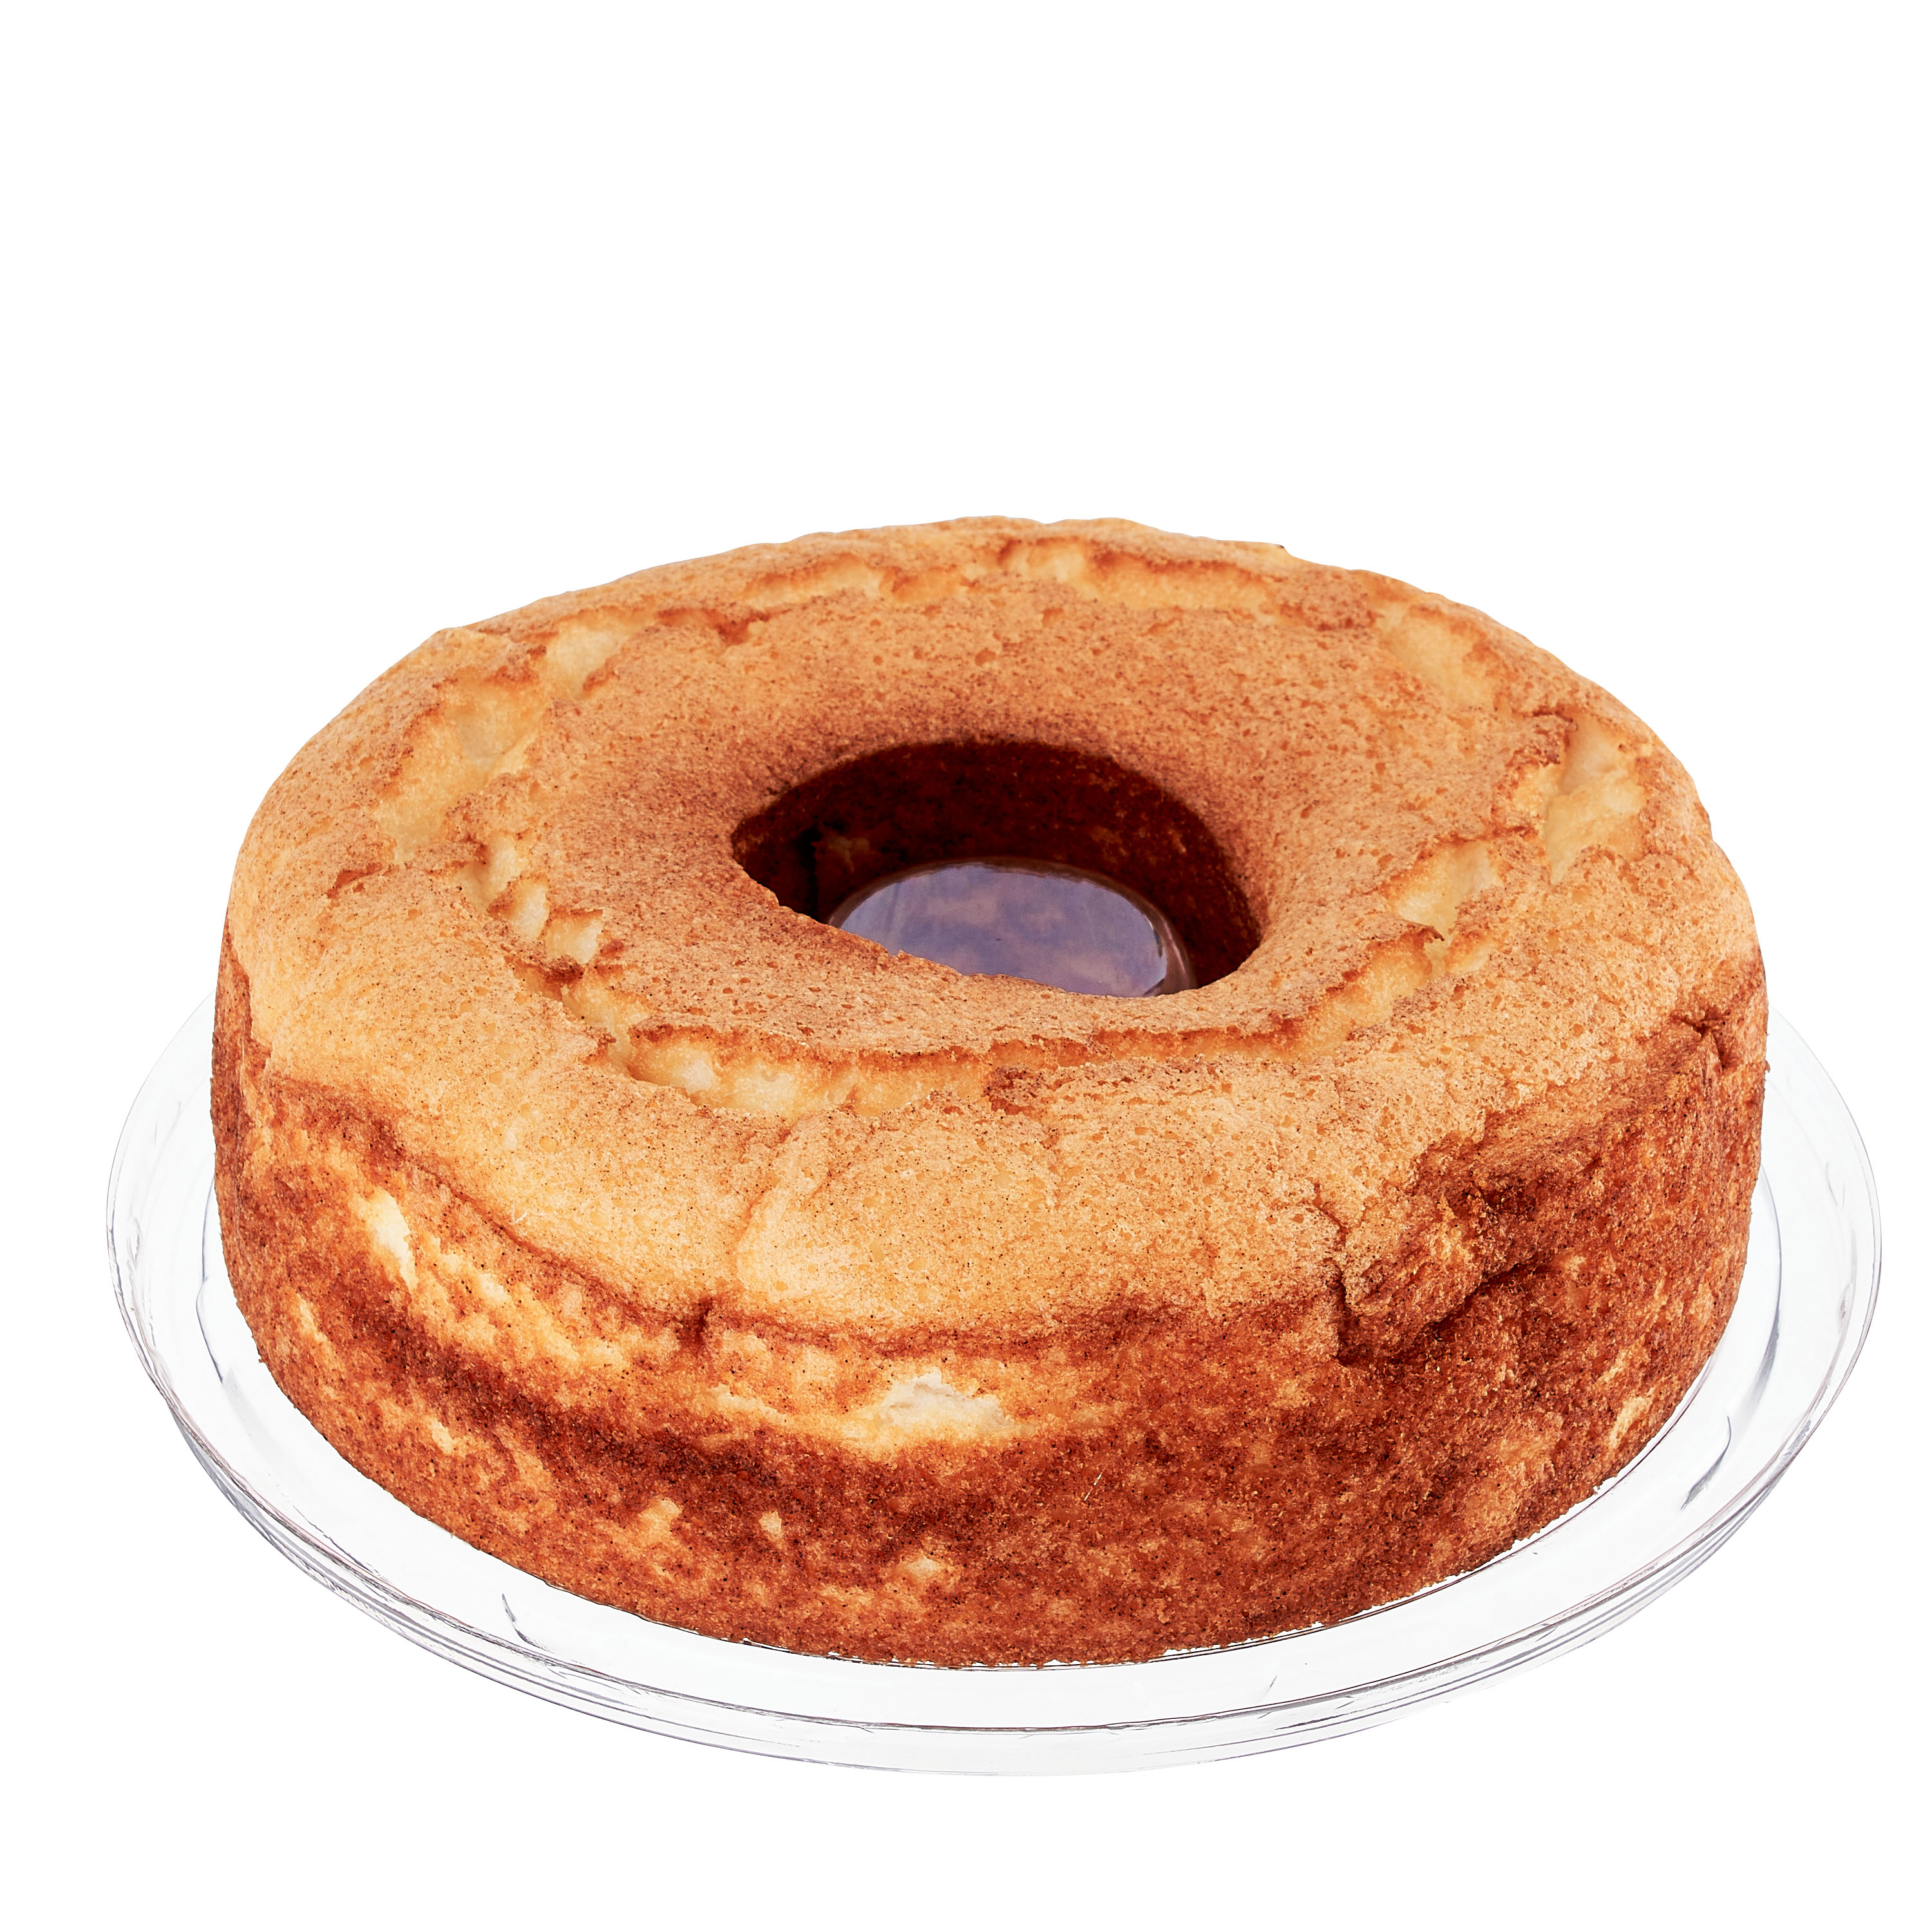 Freshness Guaranteed Plain Angel Food Ring Cake, 14 oz (Shelf Stable) - image 1 of 8